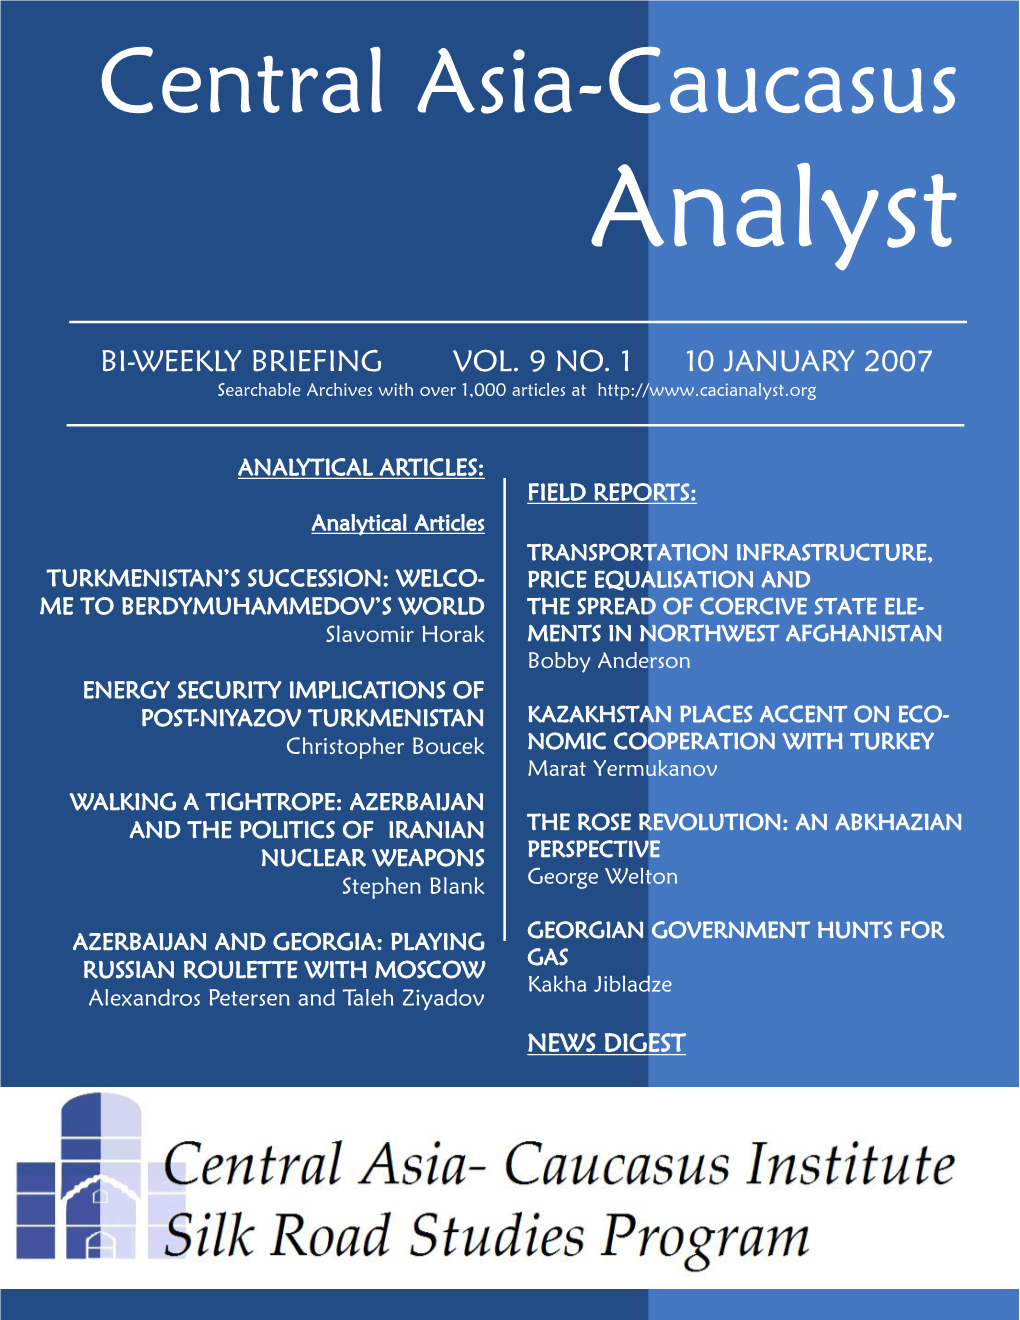 Central Asia-Caucasus Analyst Vol 9, No 1